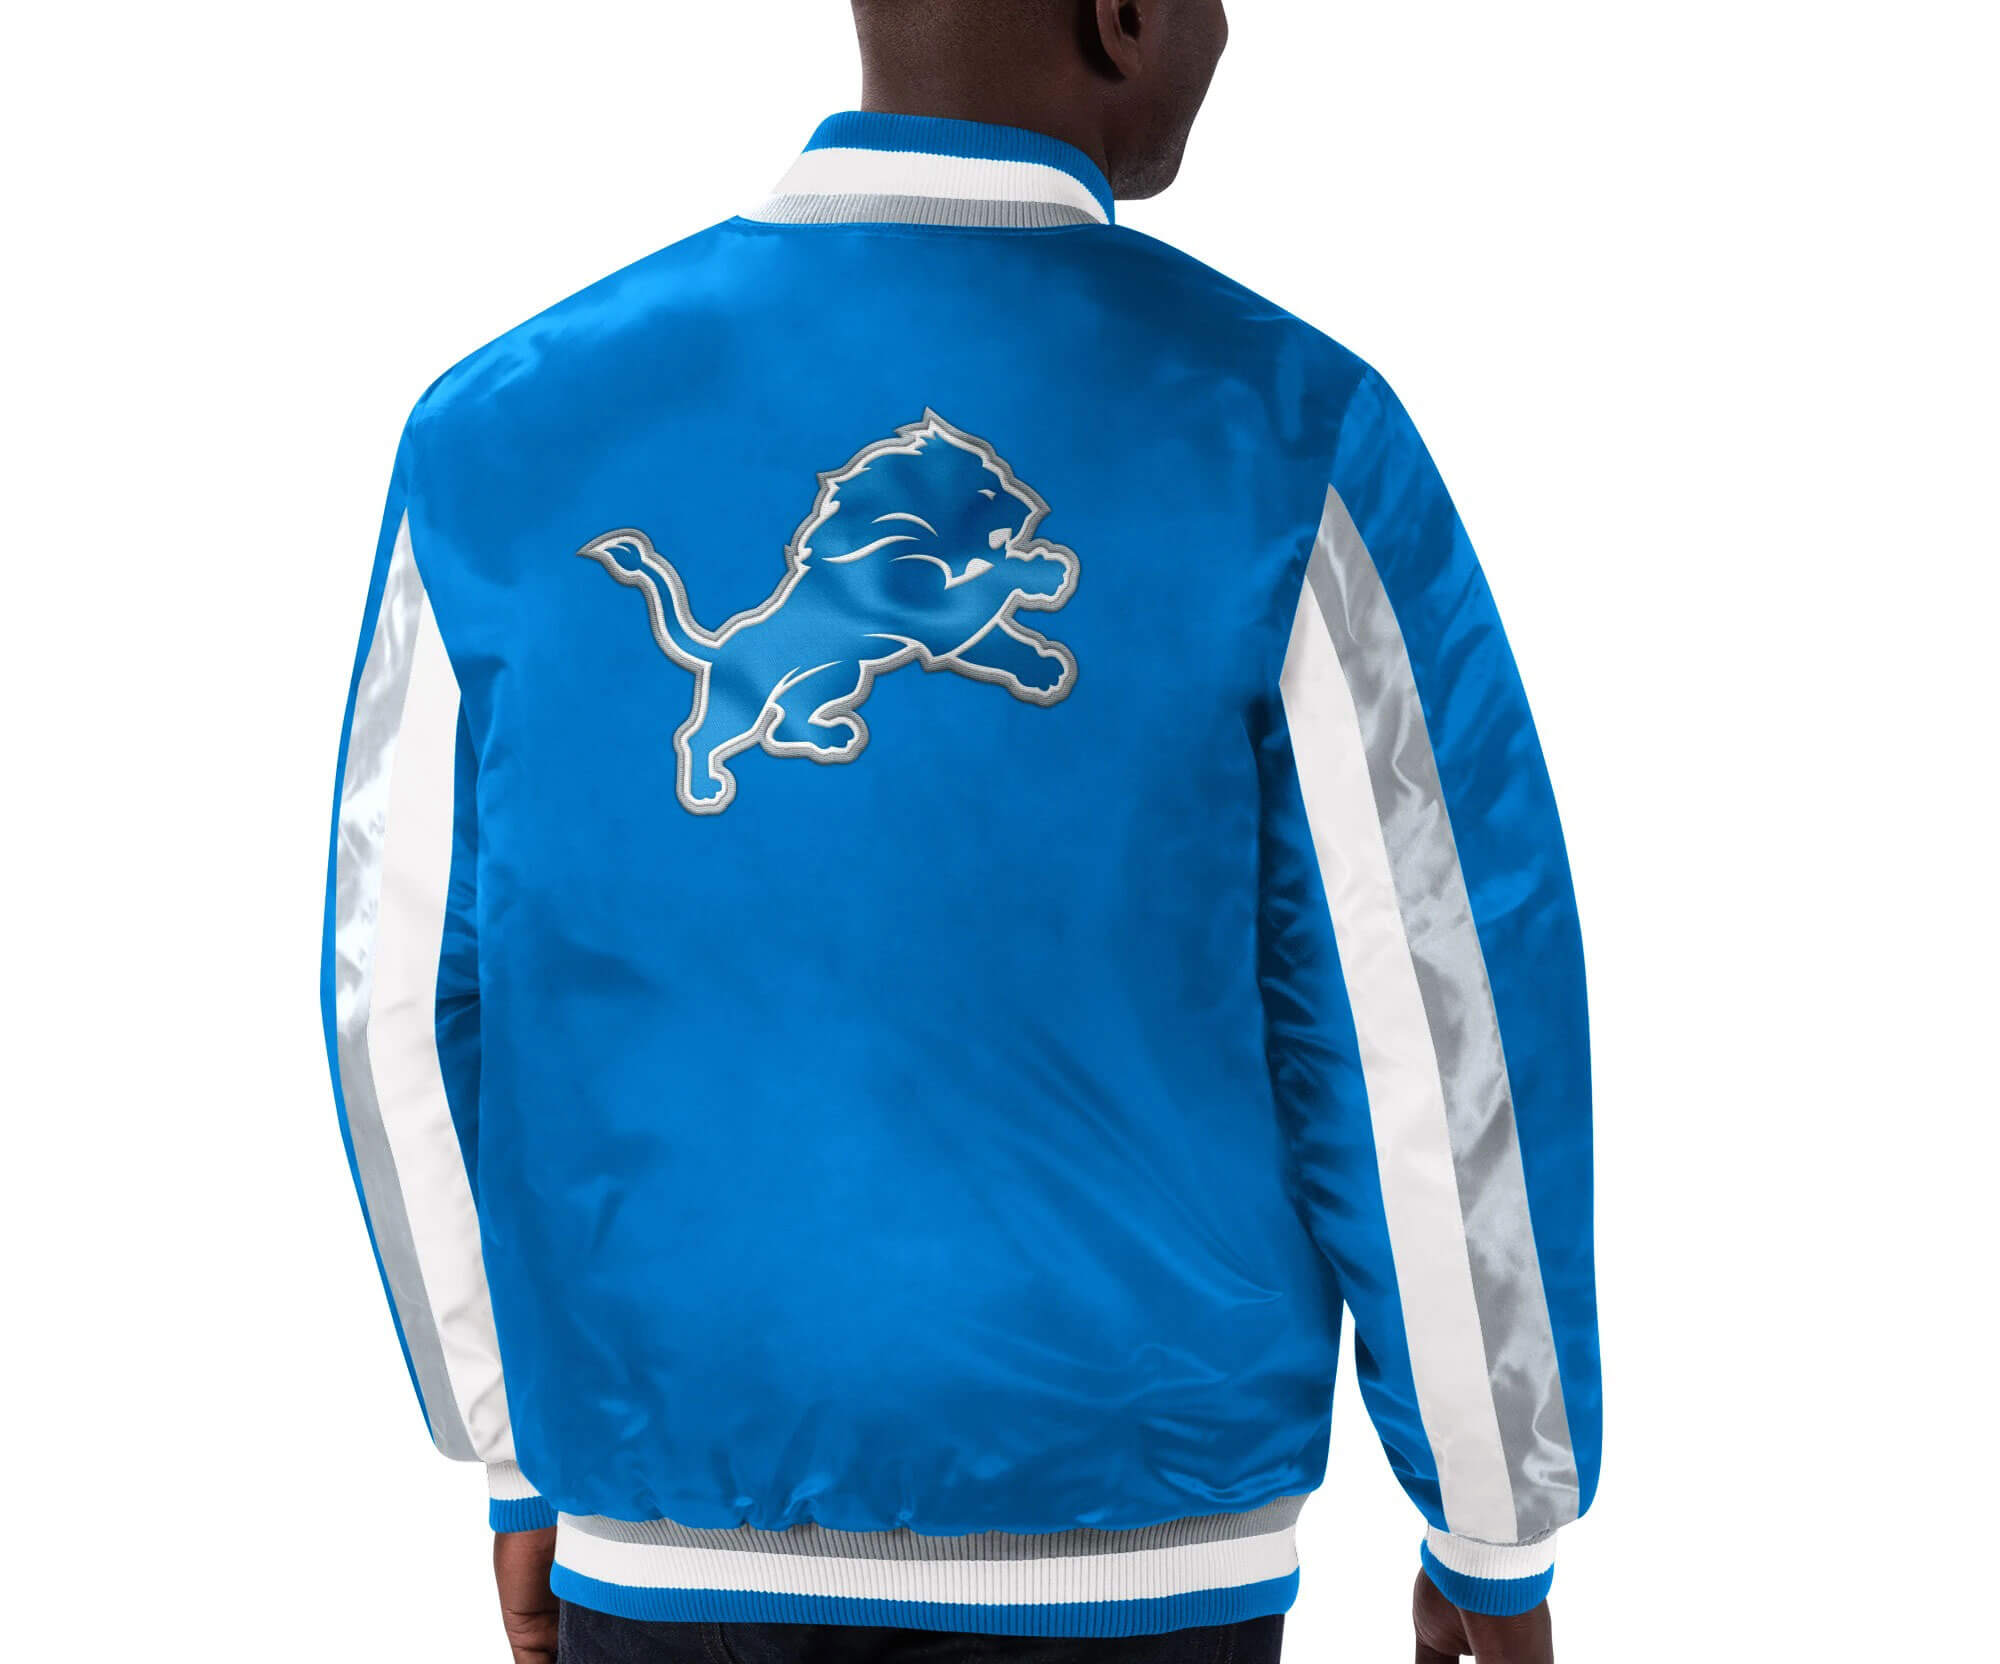 NFL Detroit Lions Stripe Blue Satin Jacket - Maker of Jacket